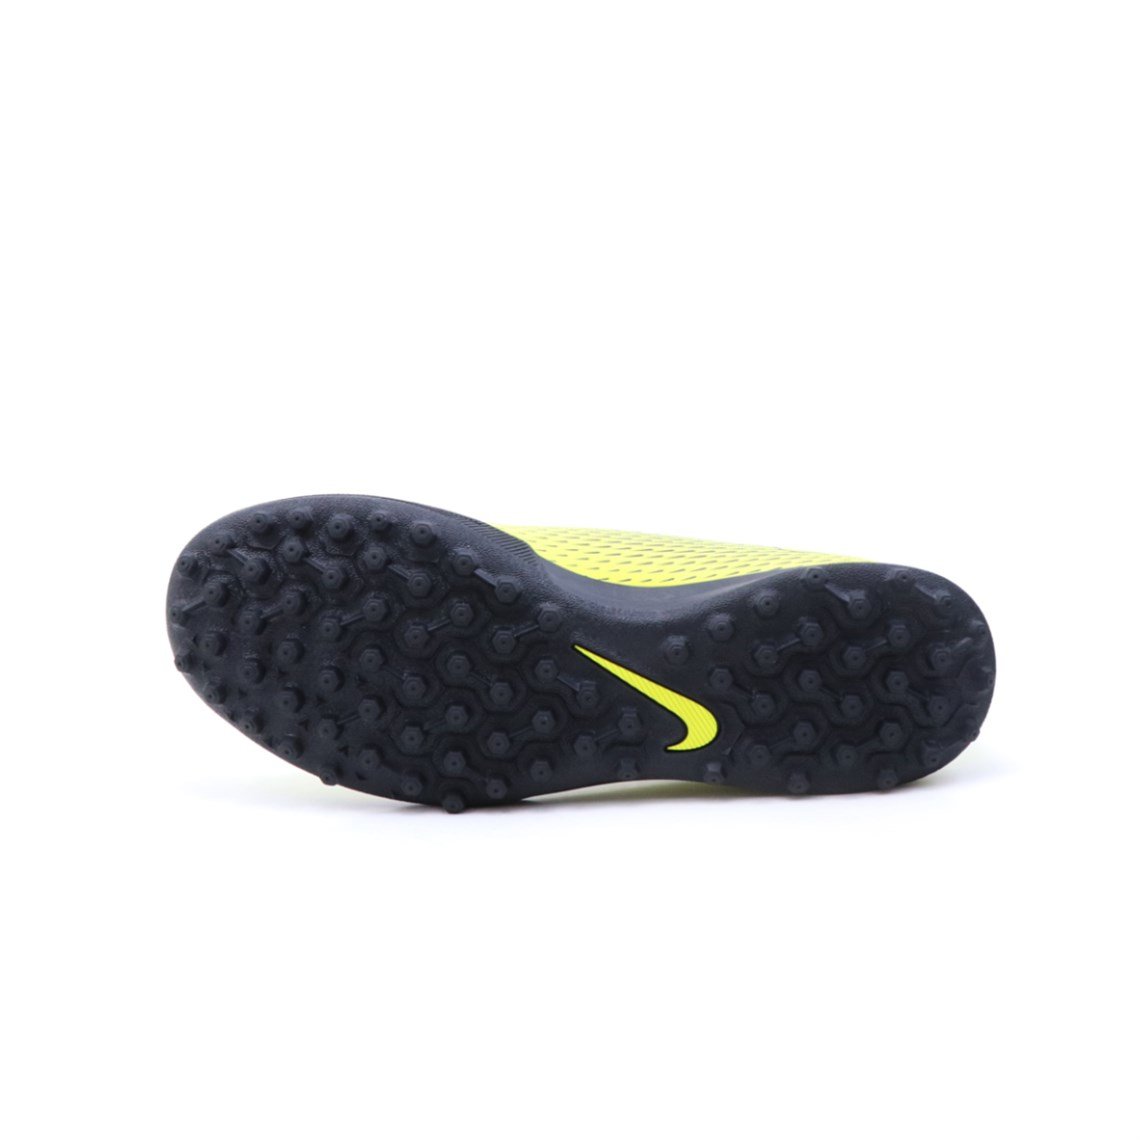 Nike Halı Saha Sarı Siyah Erkek Spor Ayakkabı 844437-701 | Ayakkabı City